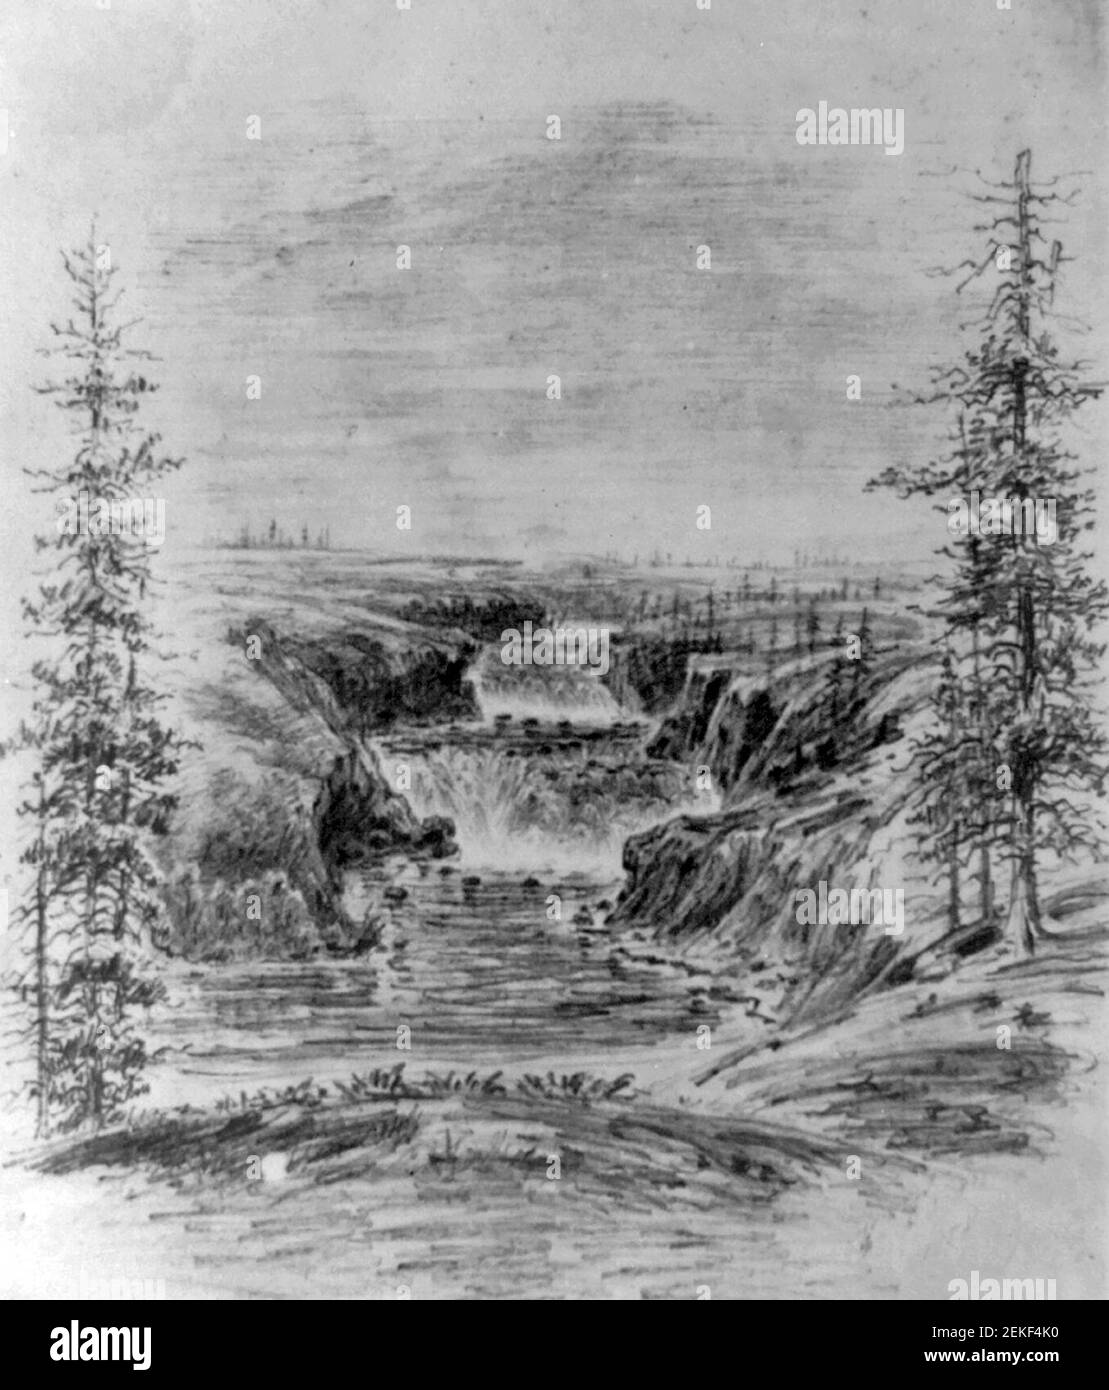 Great Falls de la rivière Spokane, W.T. 30 km sous le lac Cour d'Alene, 1858 Banque D'Images